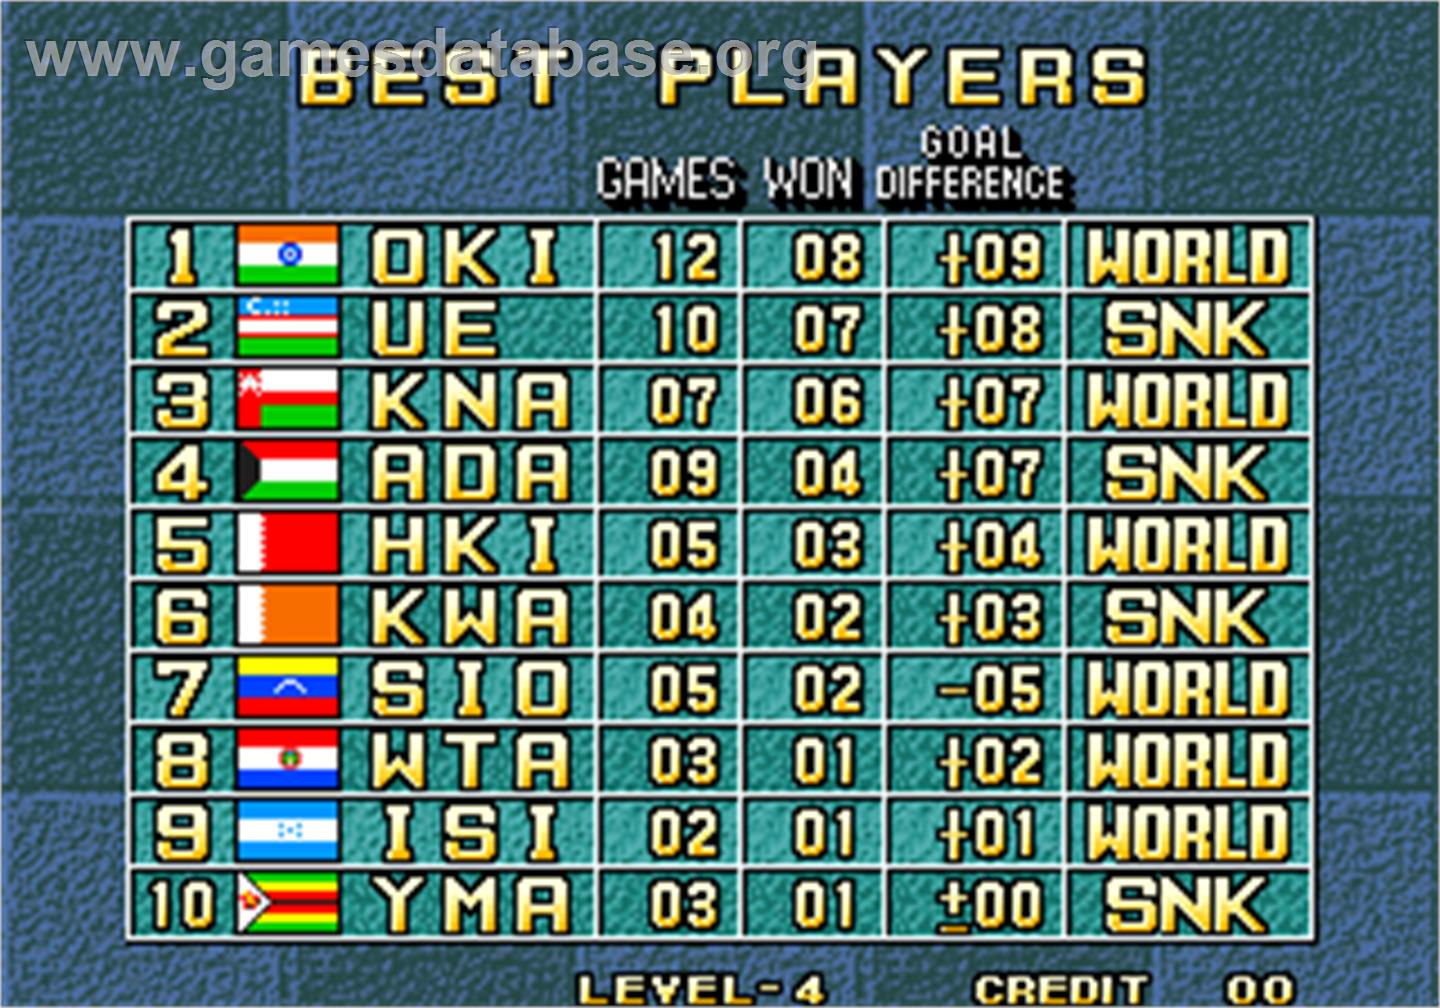 The Ultimate 11 - The SNK Football Championship / Tokuten Ou - Honoo no Libero - Arcade - Artwork - High Score Screen